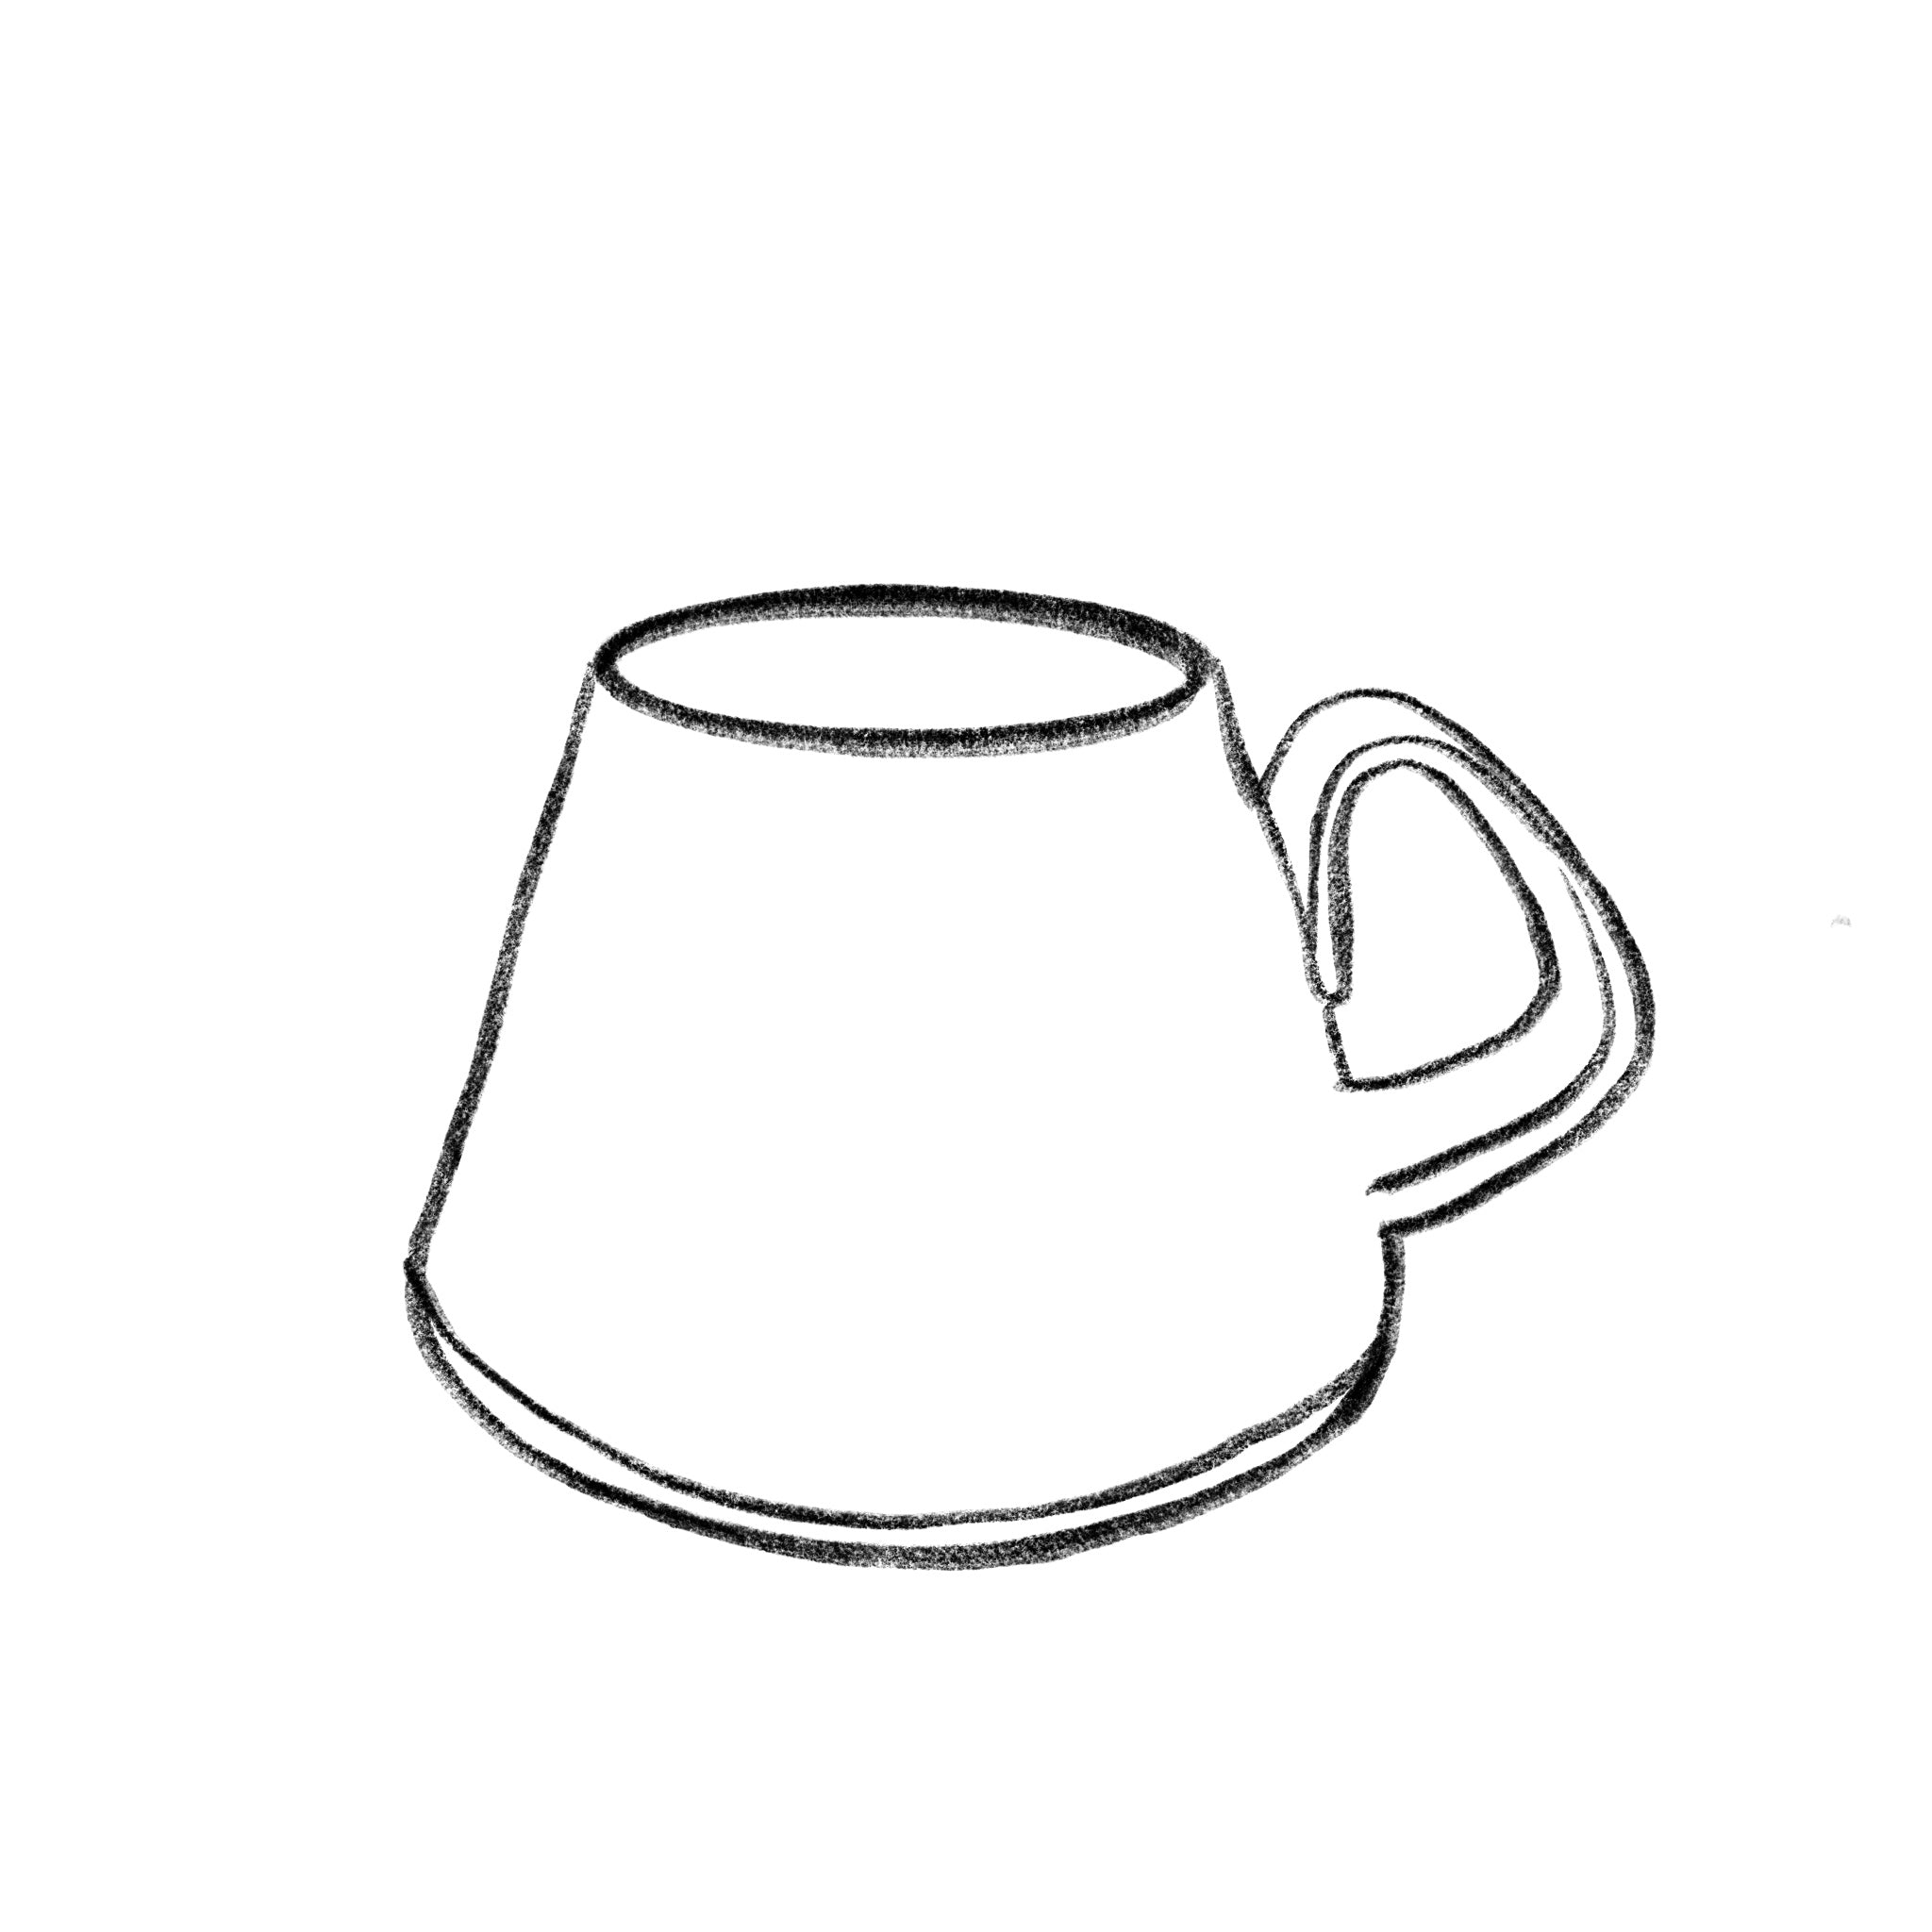 A-frame mug - MADE TO ORDER